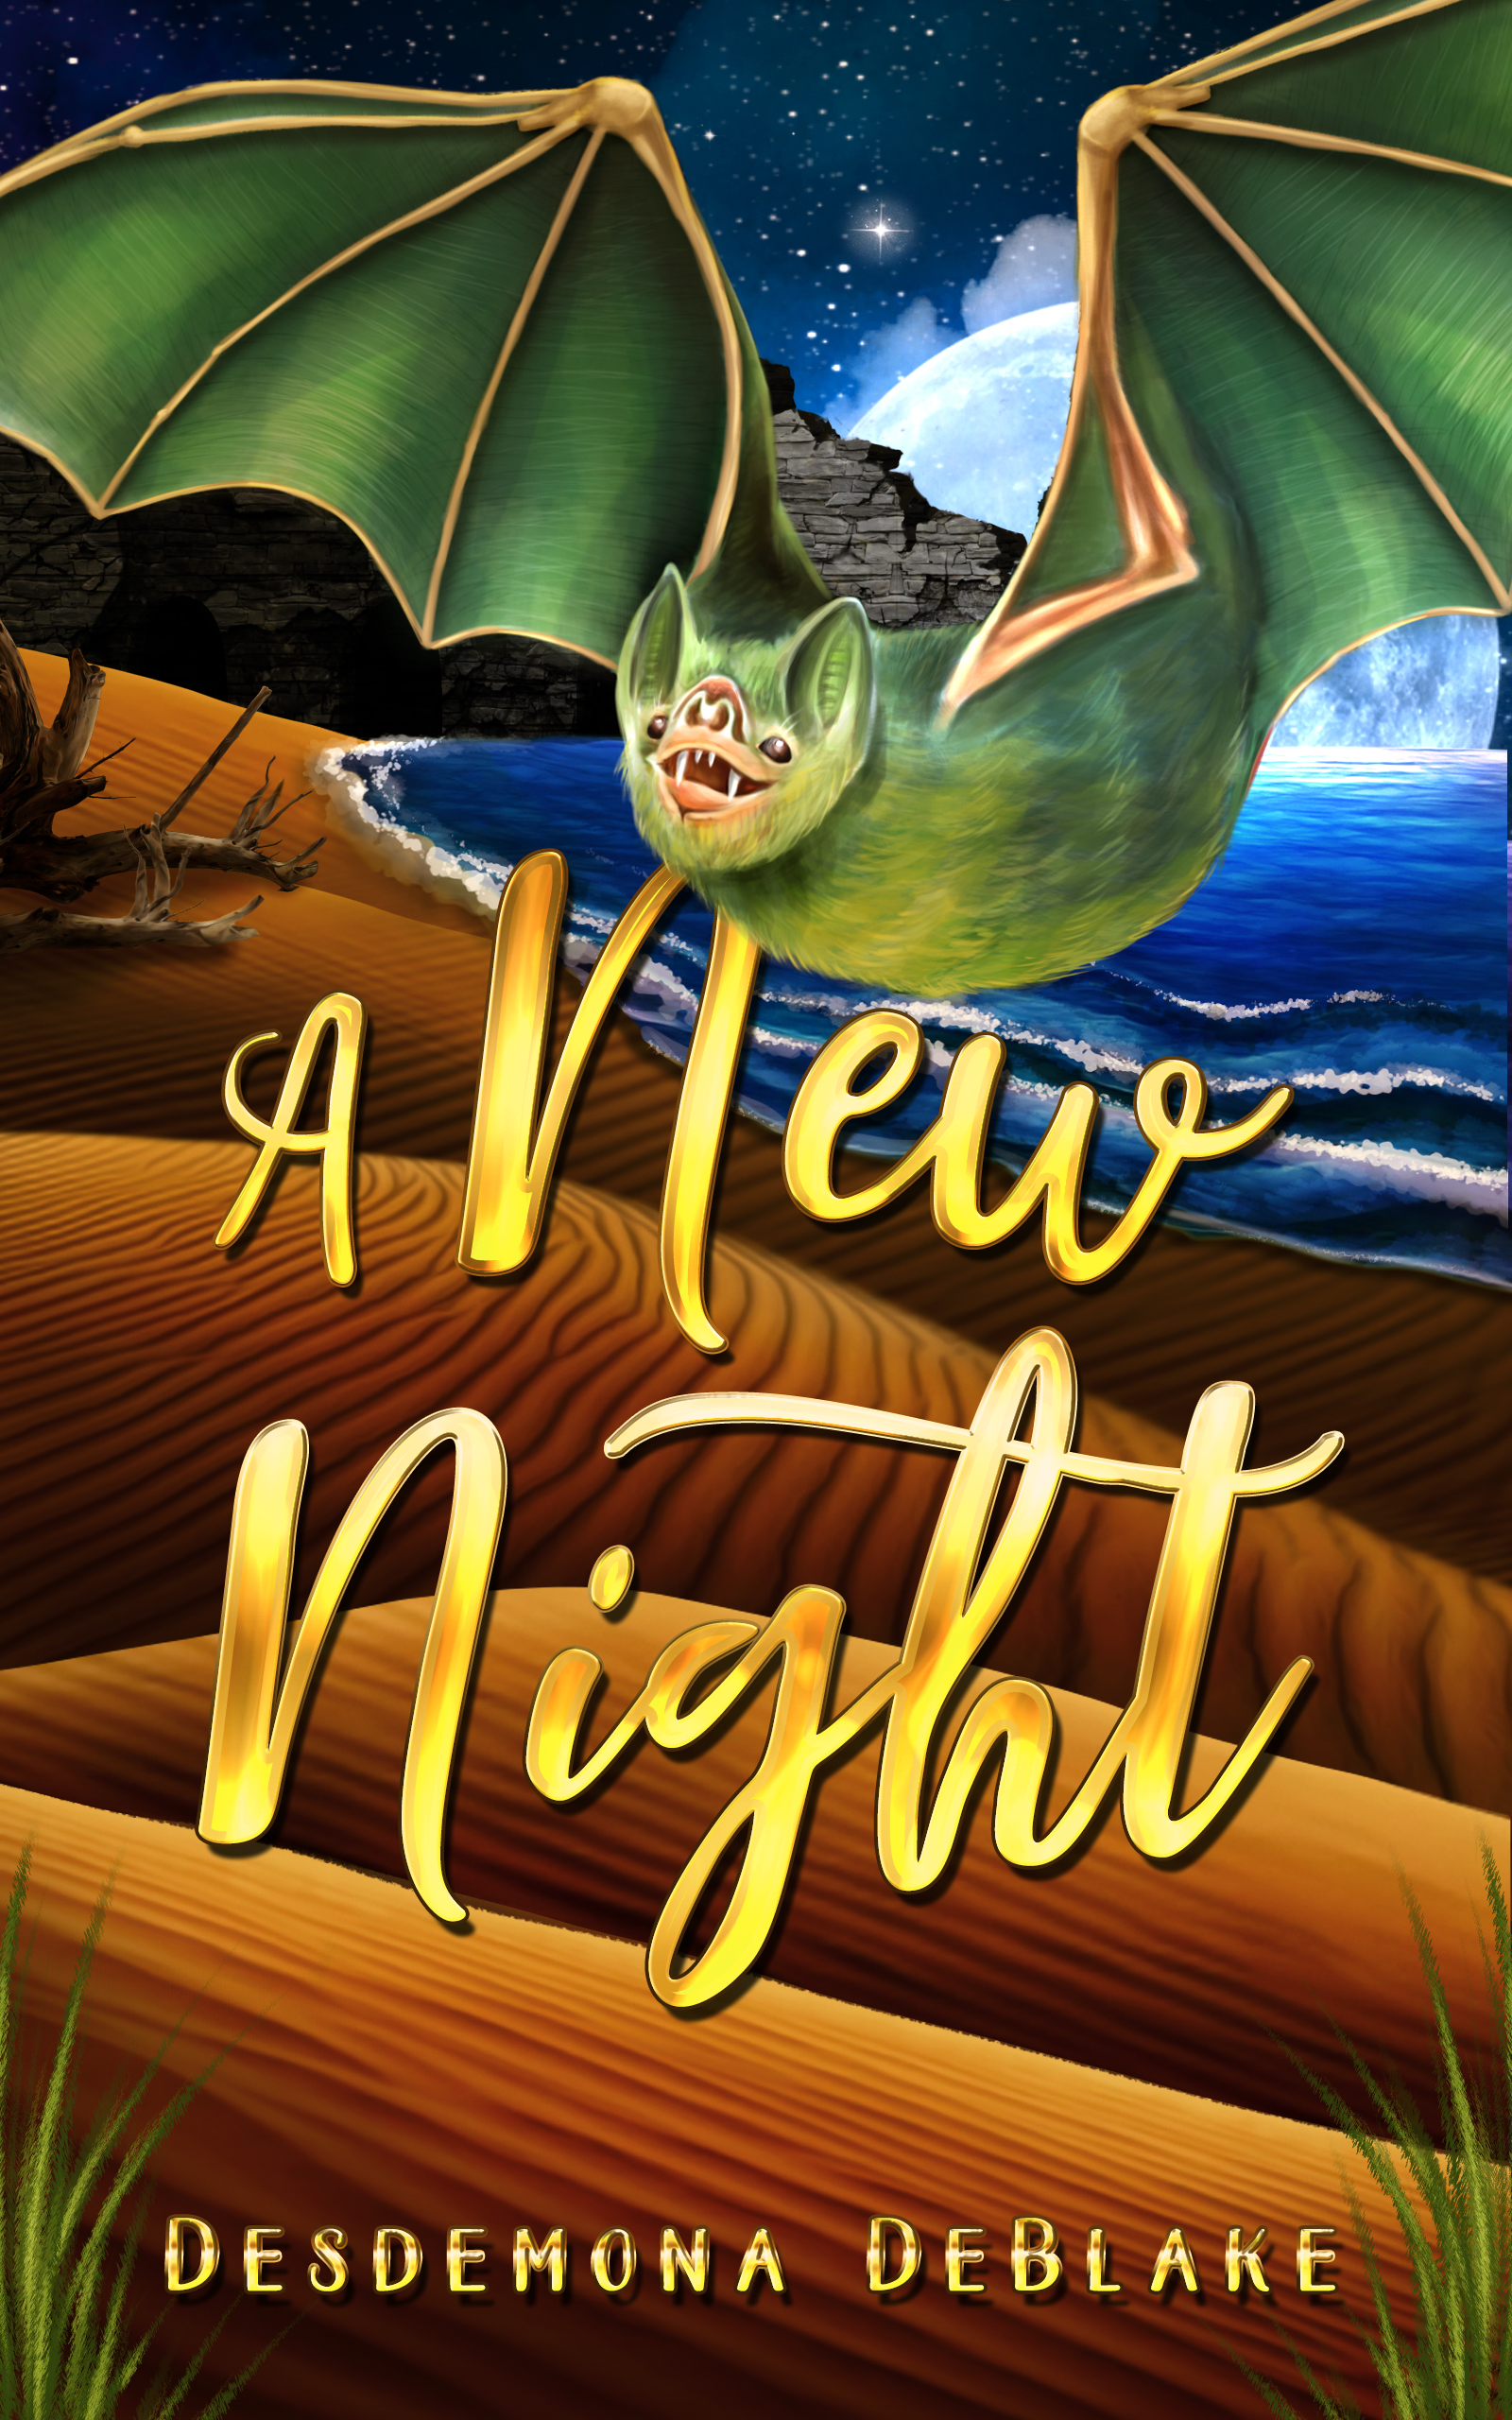 A New Night - Full Novel